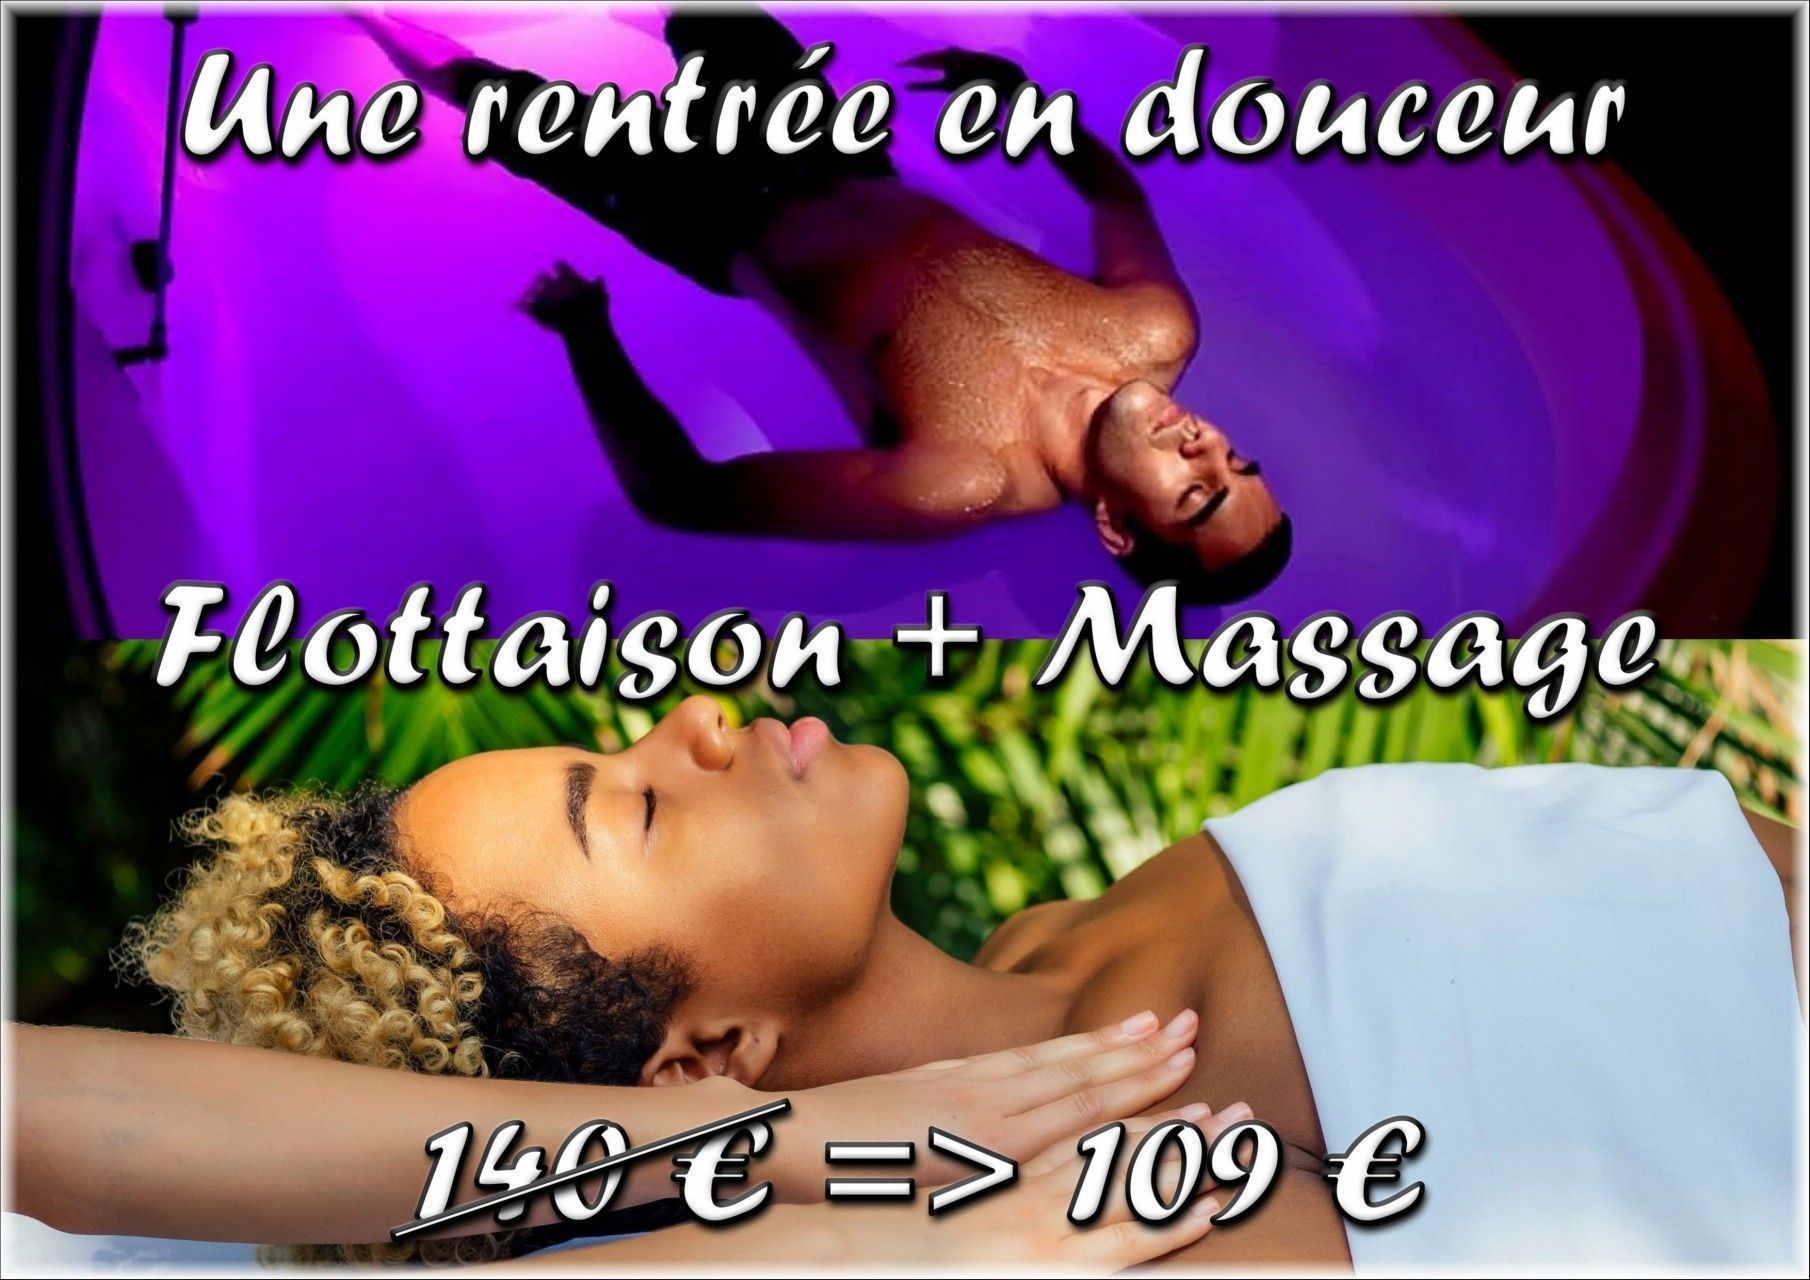 Ô Pays des Merveilles - Saint-Pierre : Promotion Flottaison+Massage 